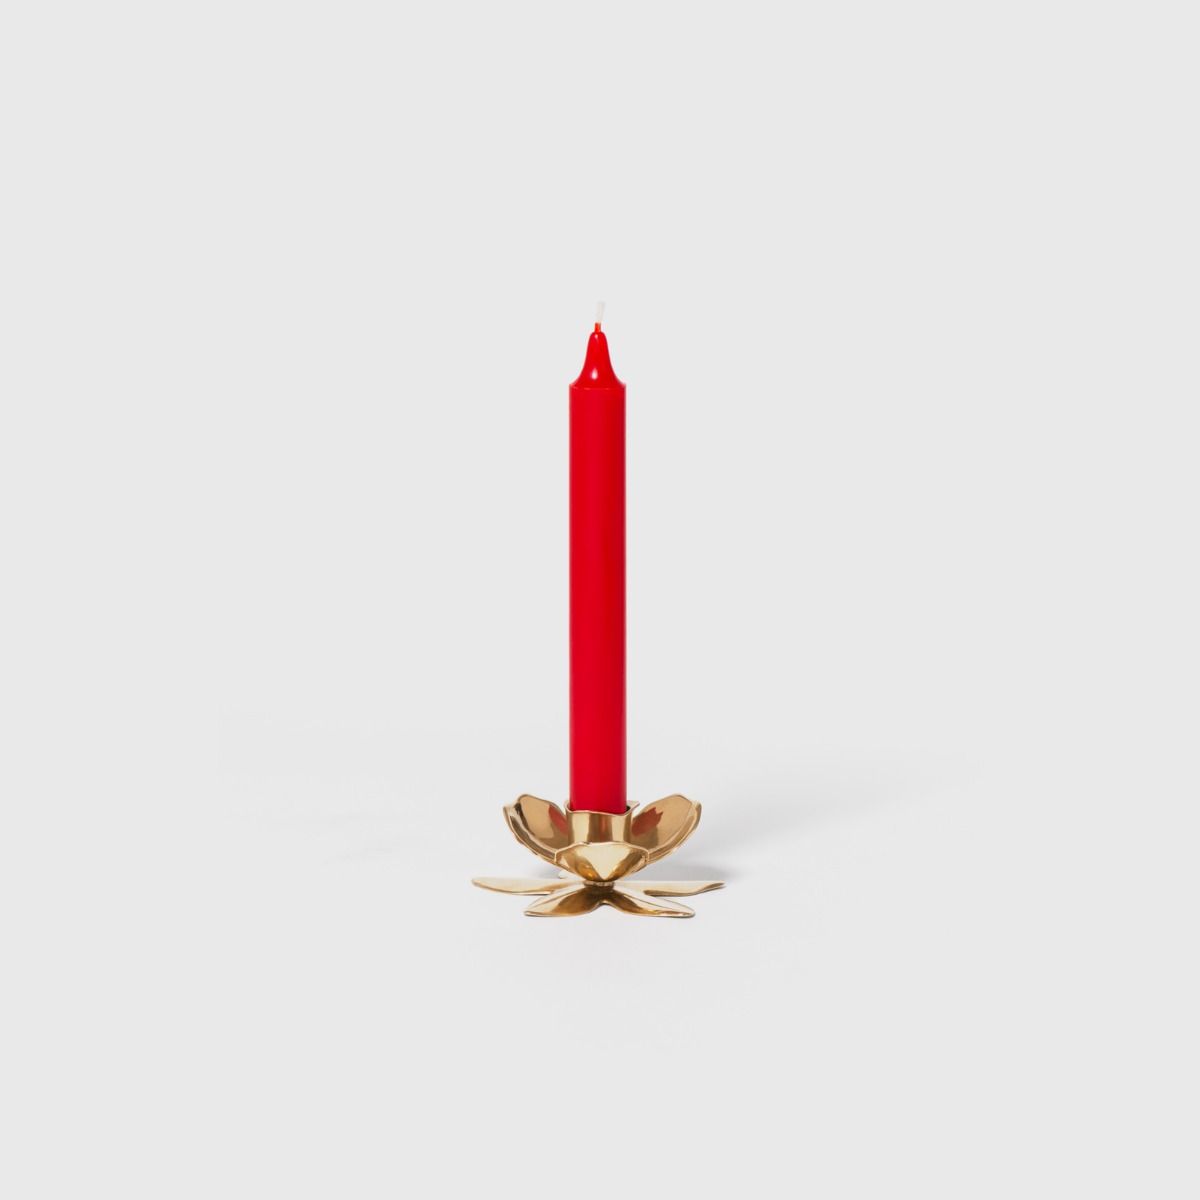 Gold Taper Candle Holder – Oleander Floral Design